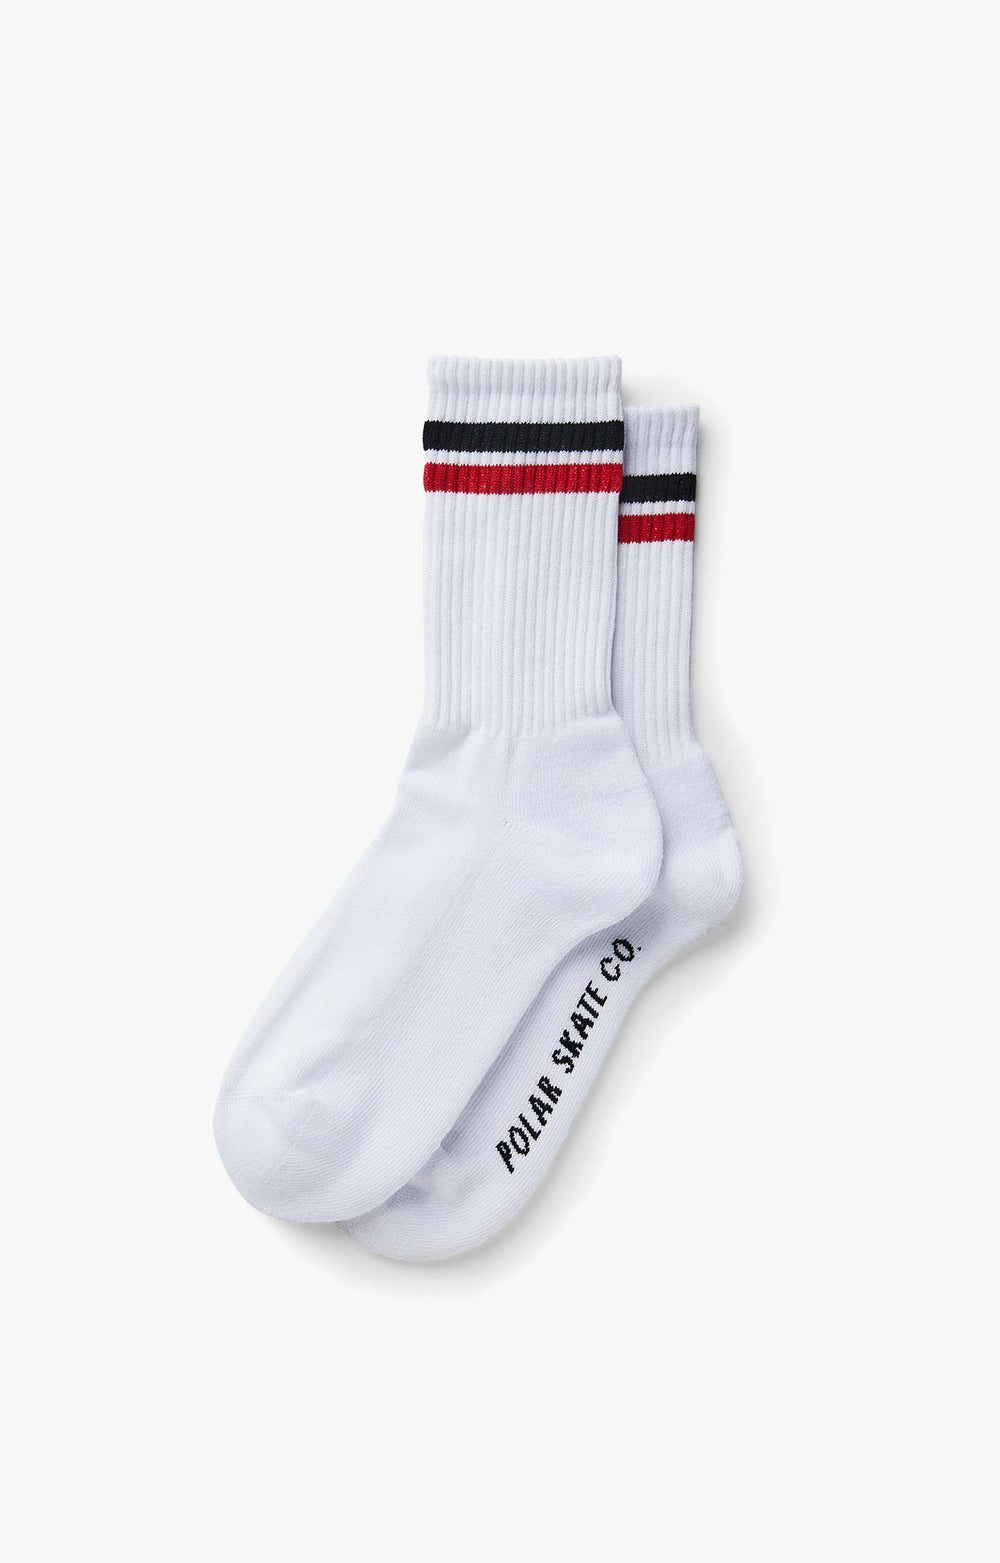 Polar Skate Co Stripe Socks, White/Black/Red